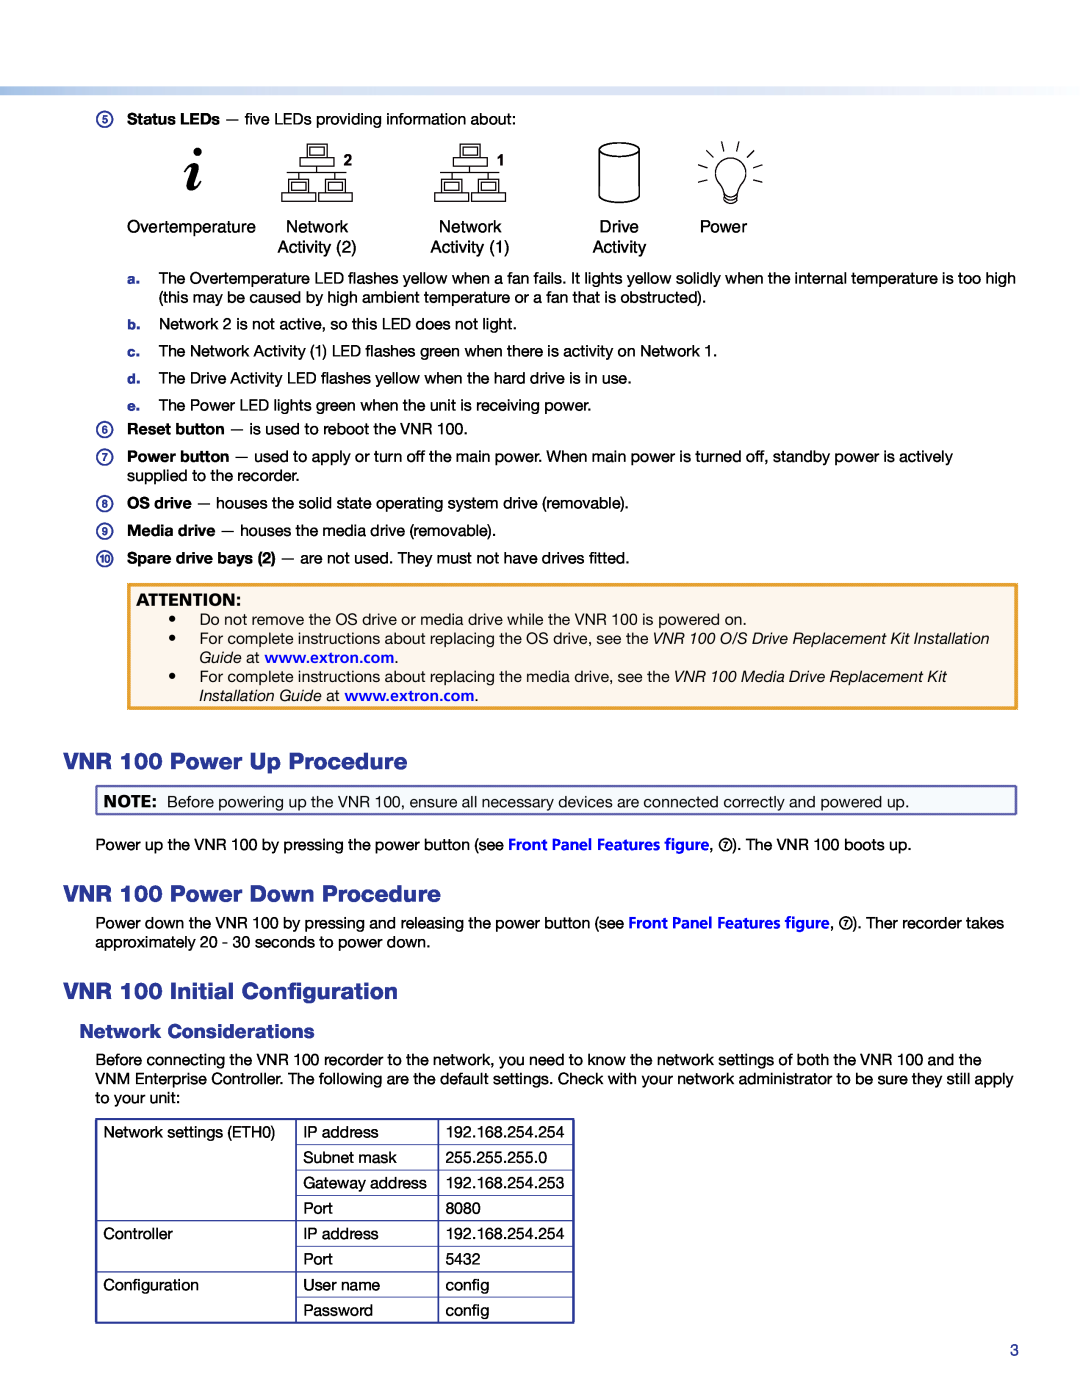 Extron electronic VNR 100 Power Up Procedure, VNR 100 Power Down Procedure, VNR 100 Initial Configuration, Network 